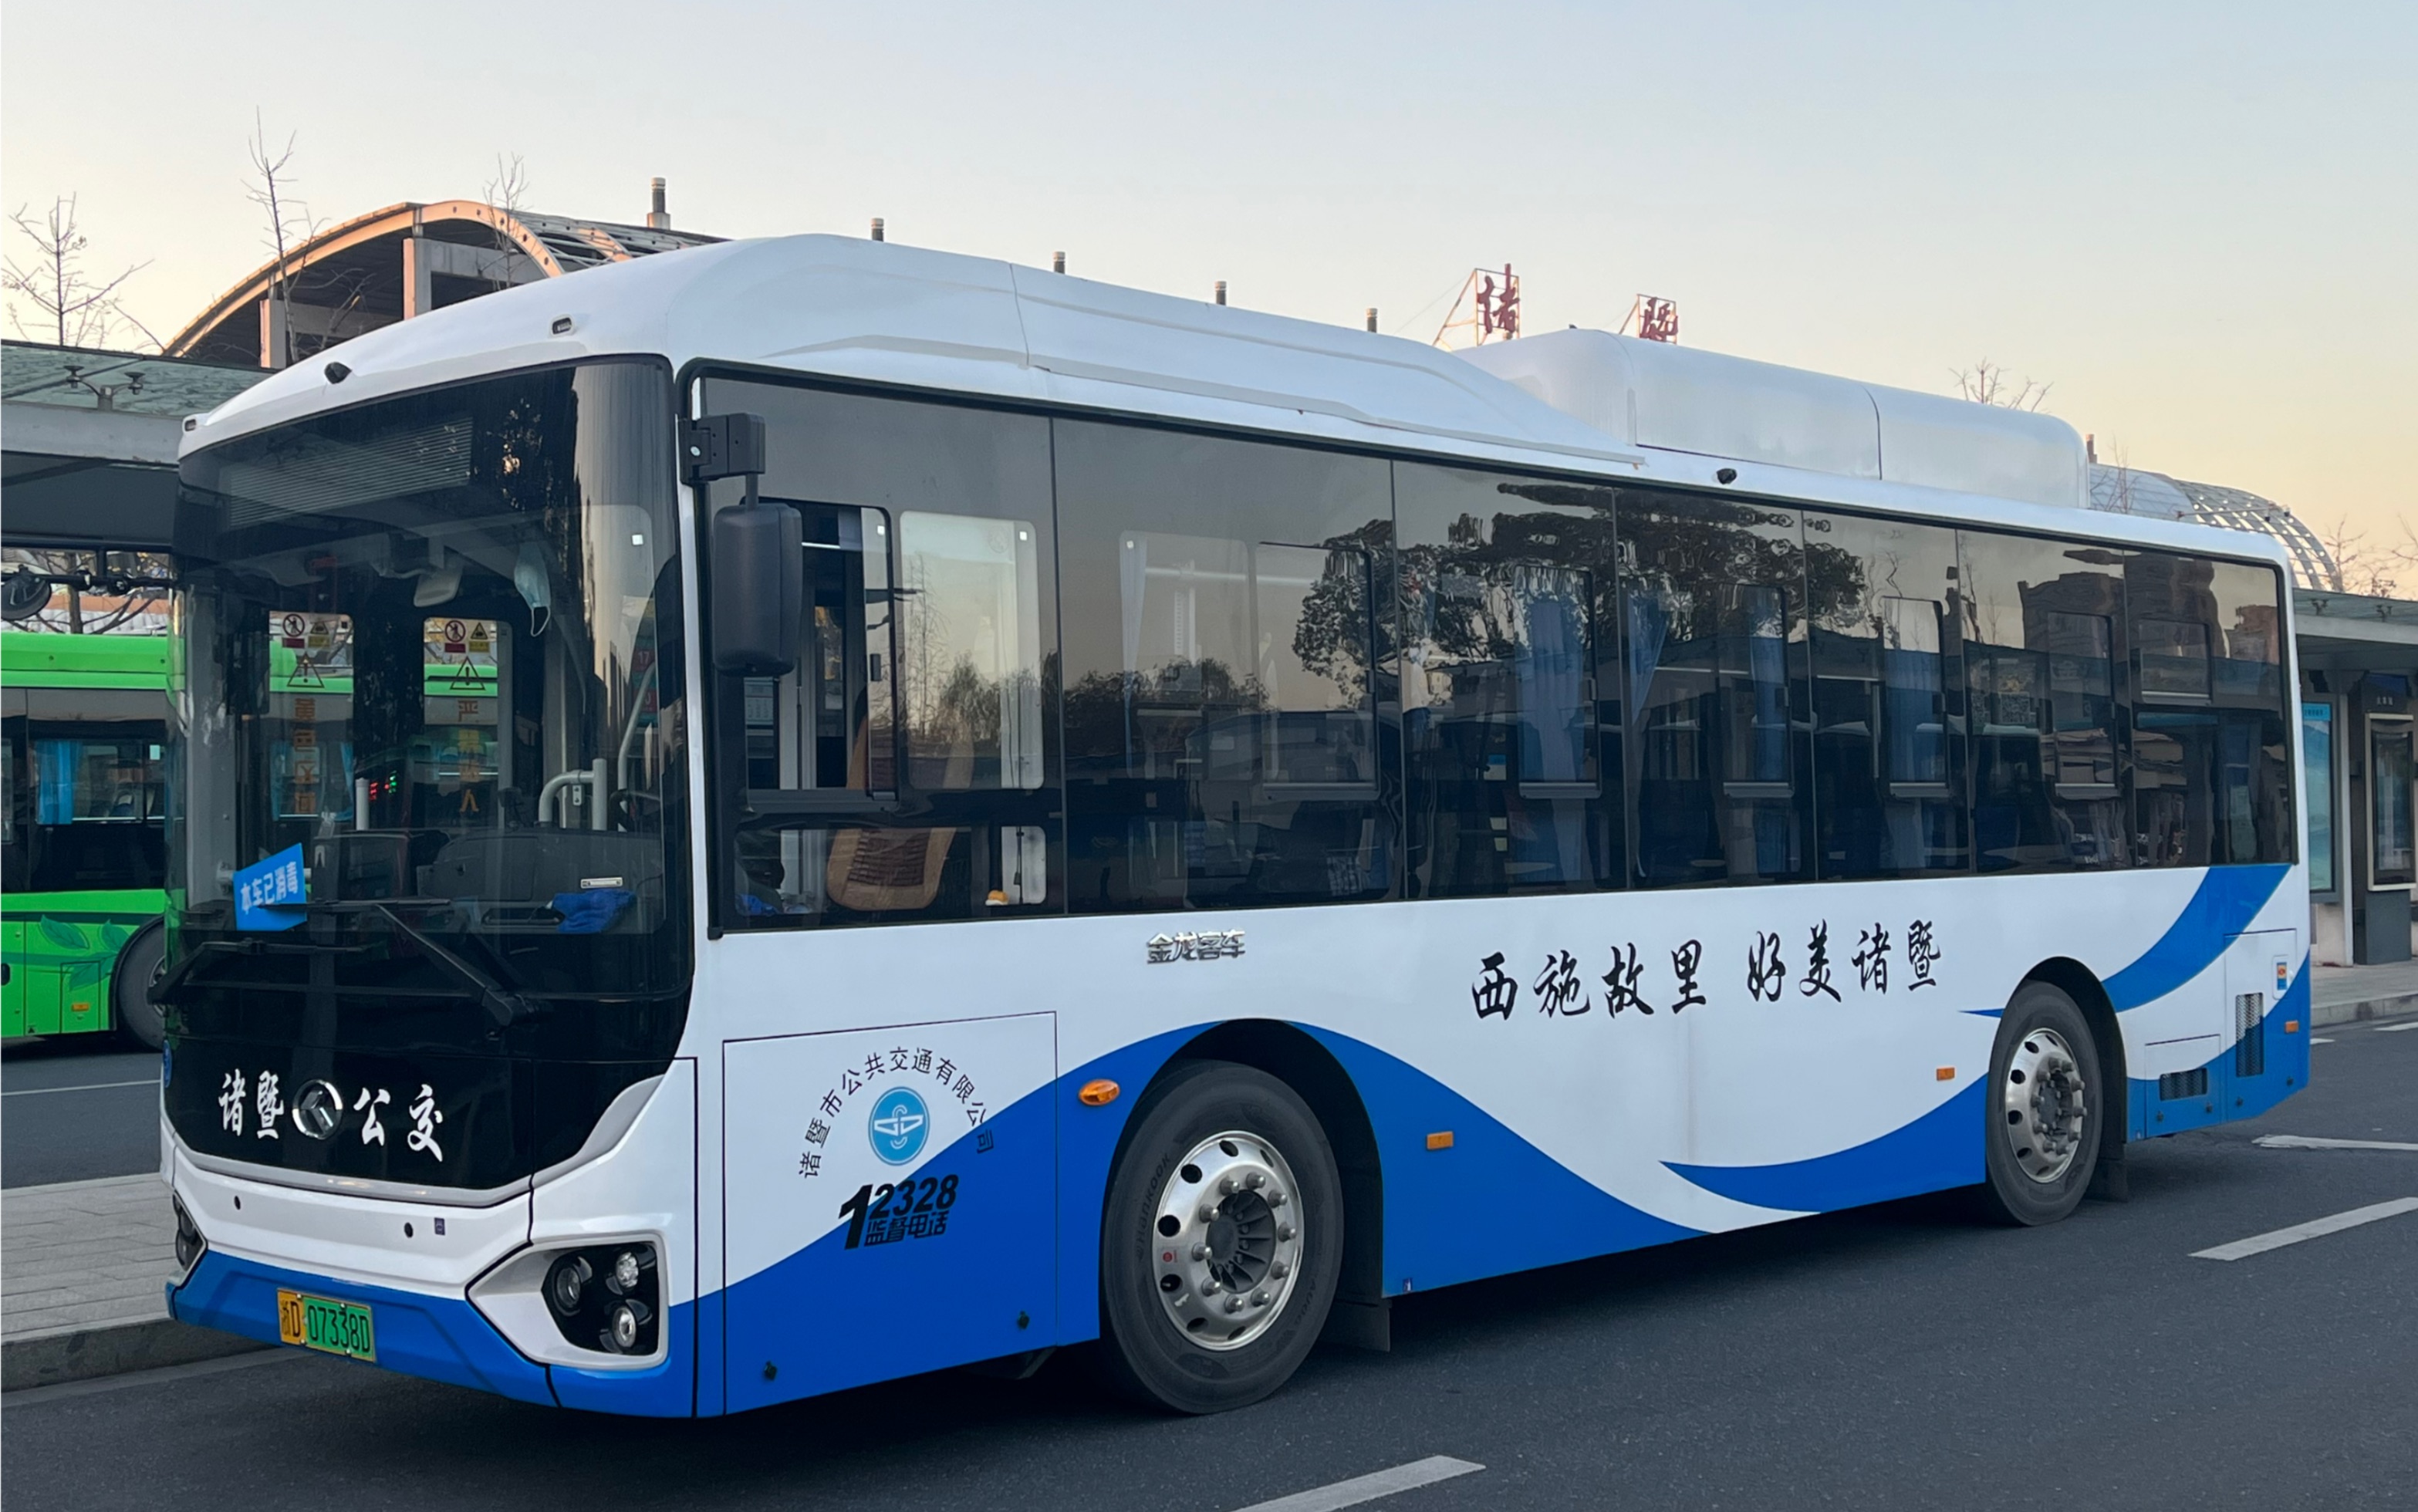 诸暨公交新车:金龙9米轮边驱动巴士_哔哩哔哩_bilibili